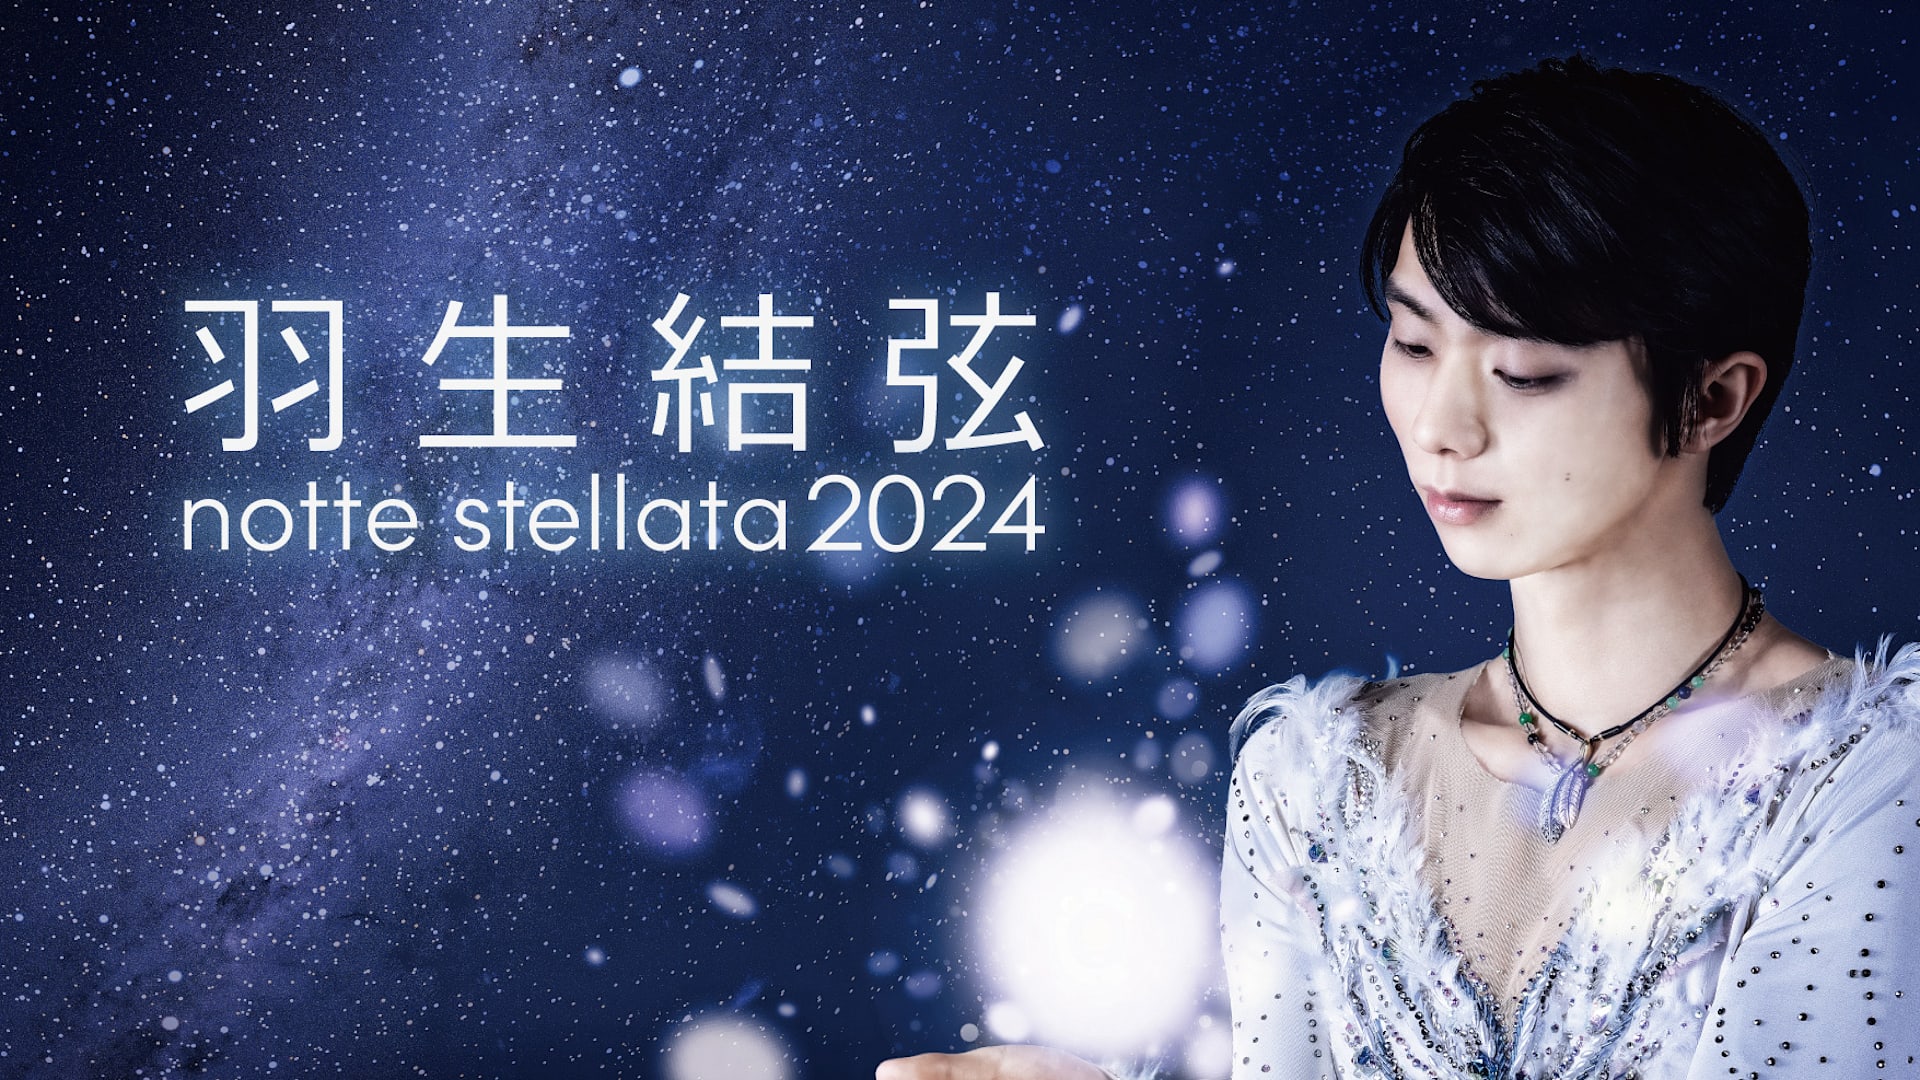 Figure skating - How to watch Yuzuru Hanyu's 'notte stellata 2024 